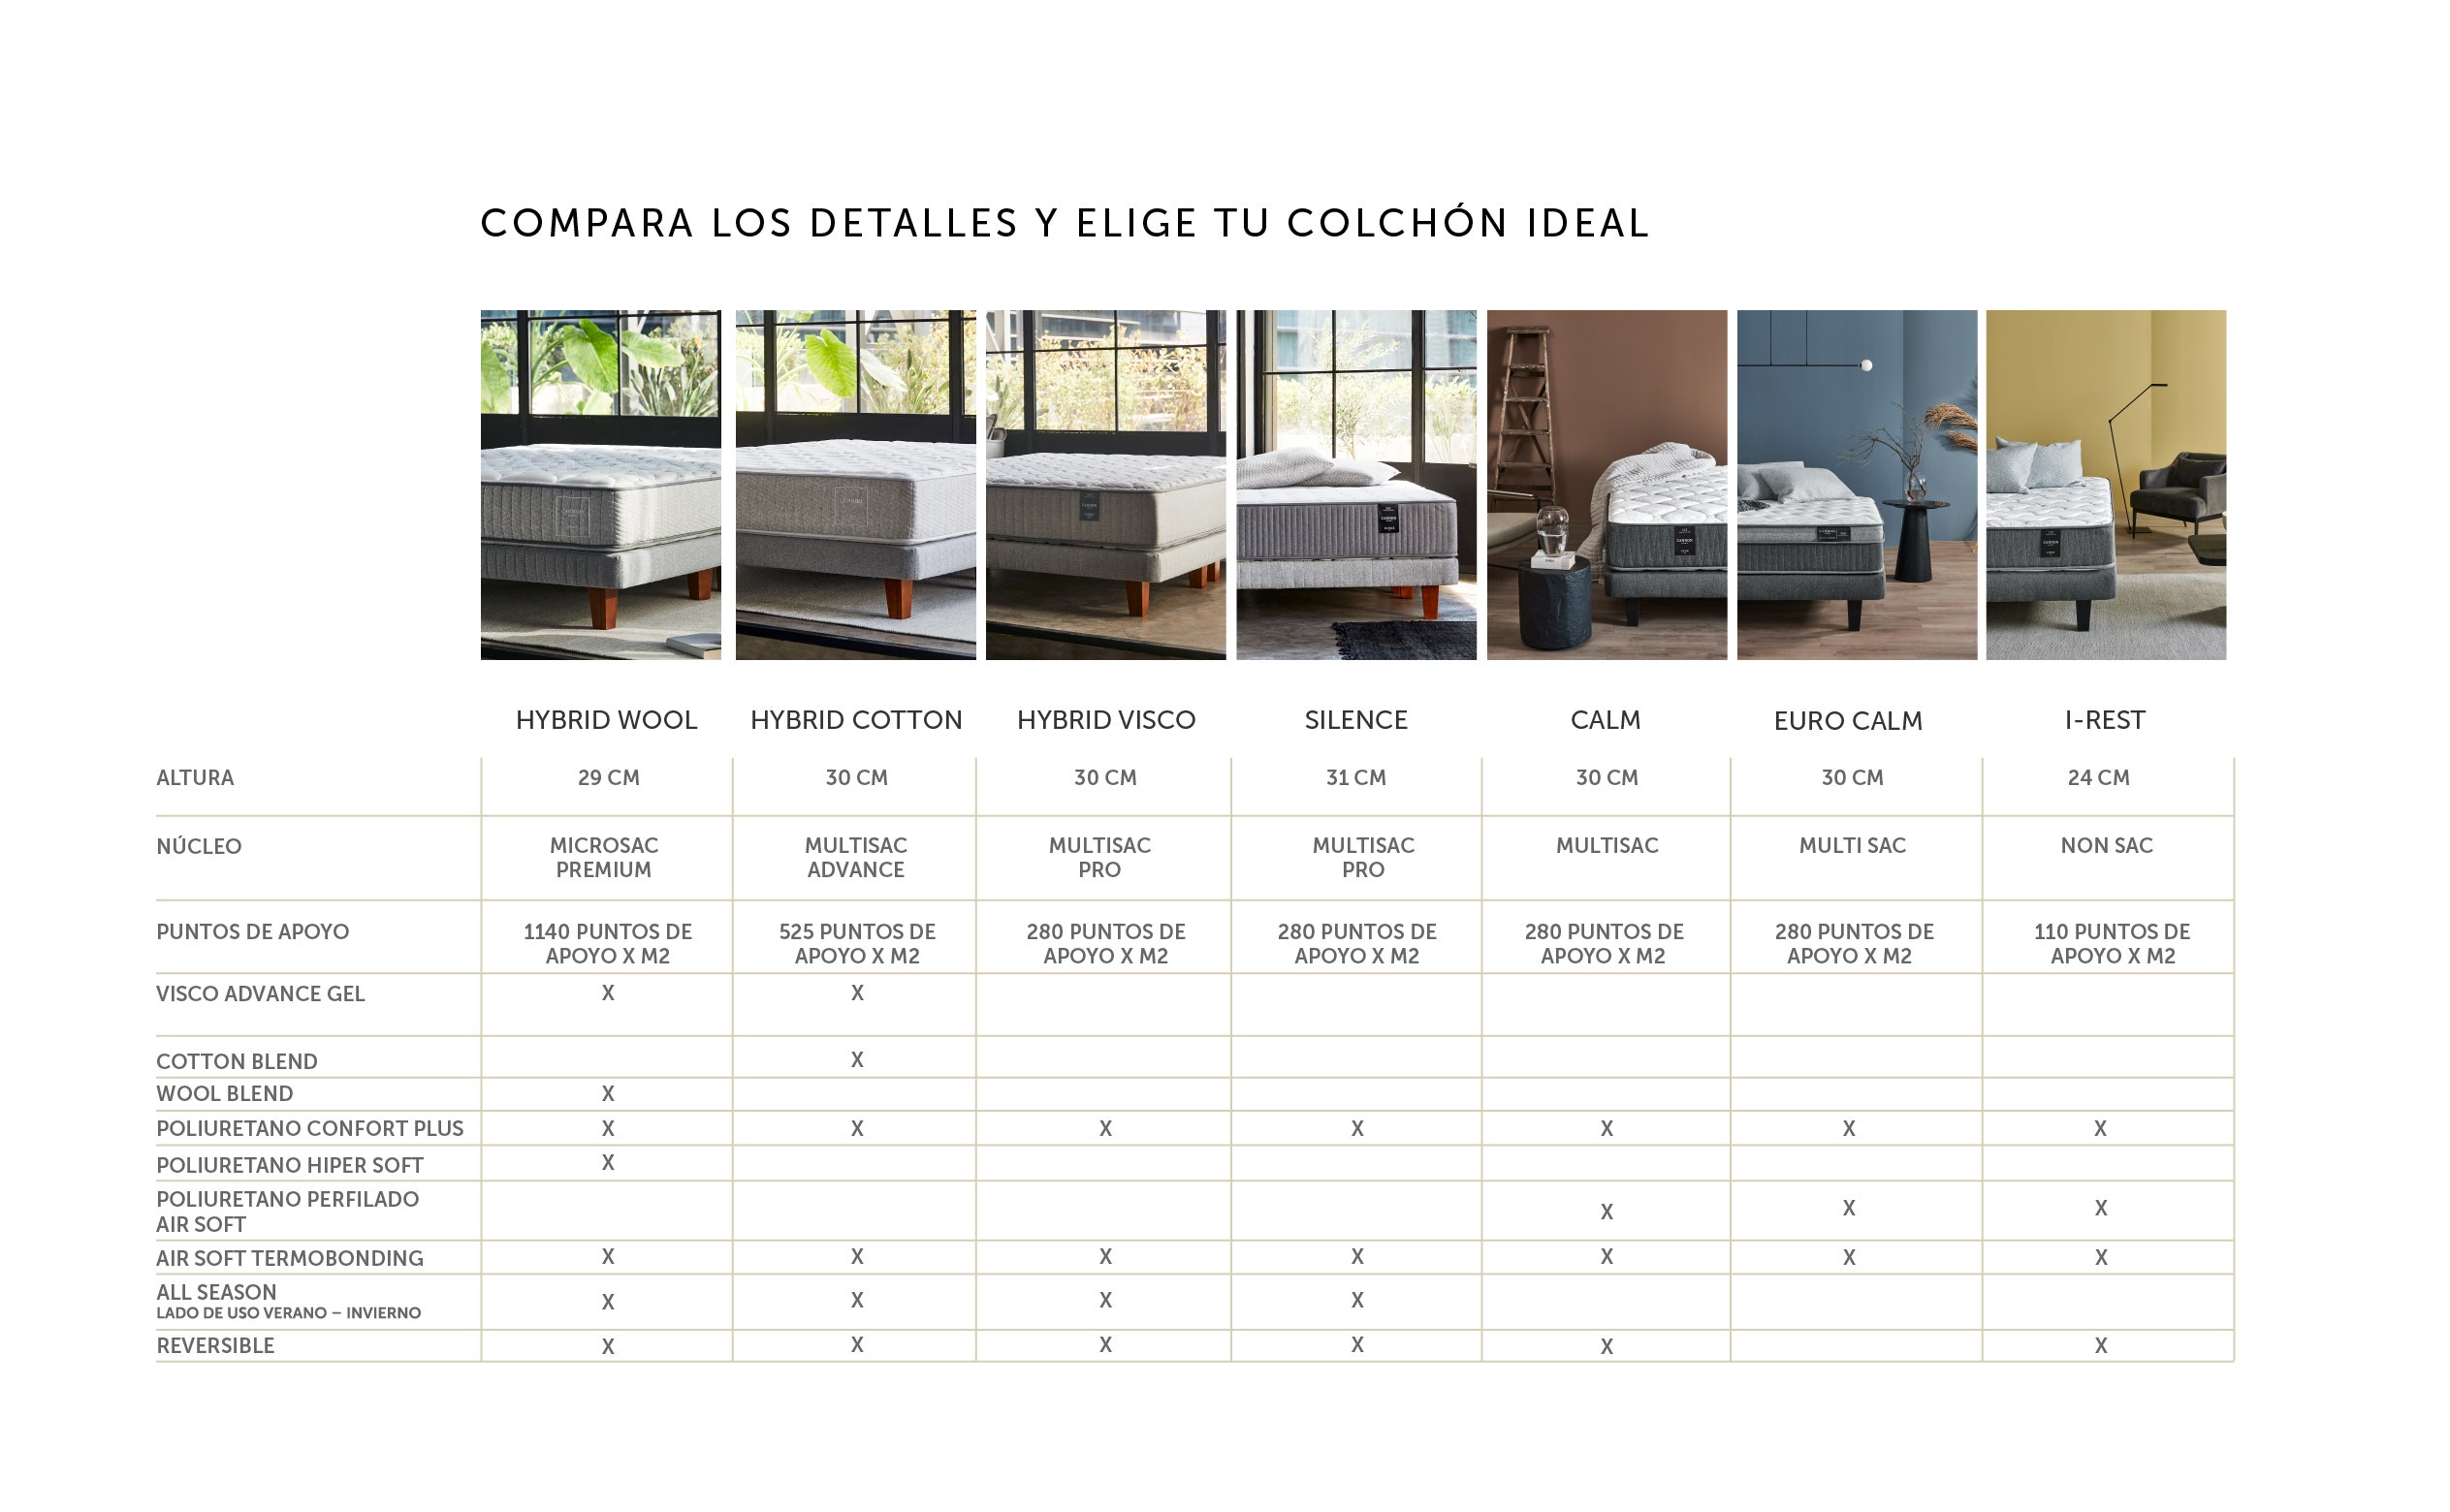 Compara los detalle y elige tu colchón ideal